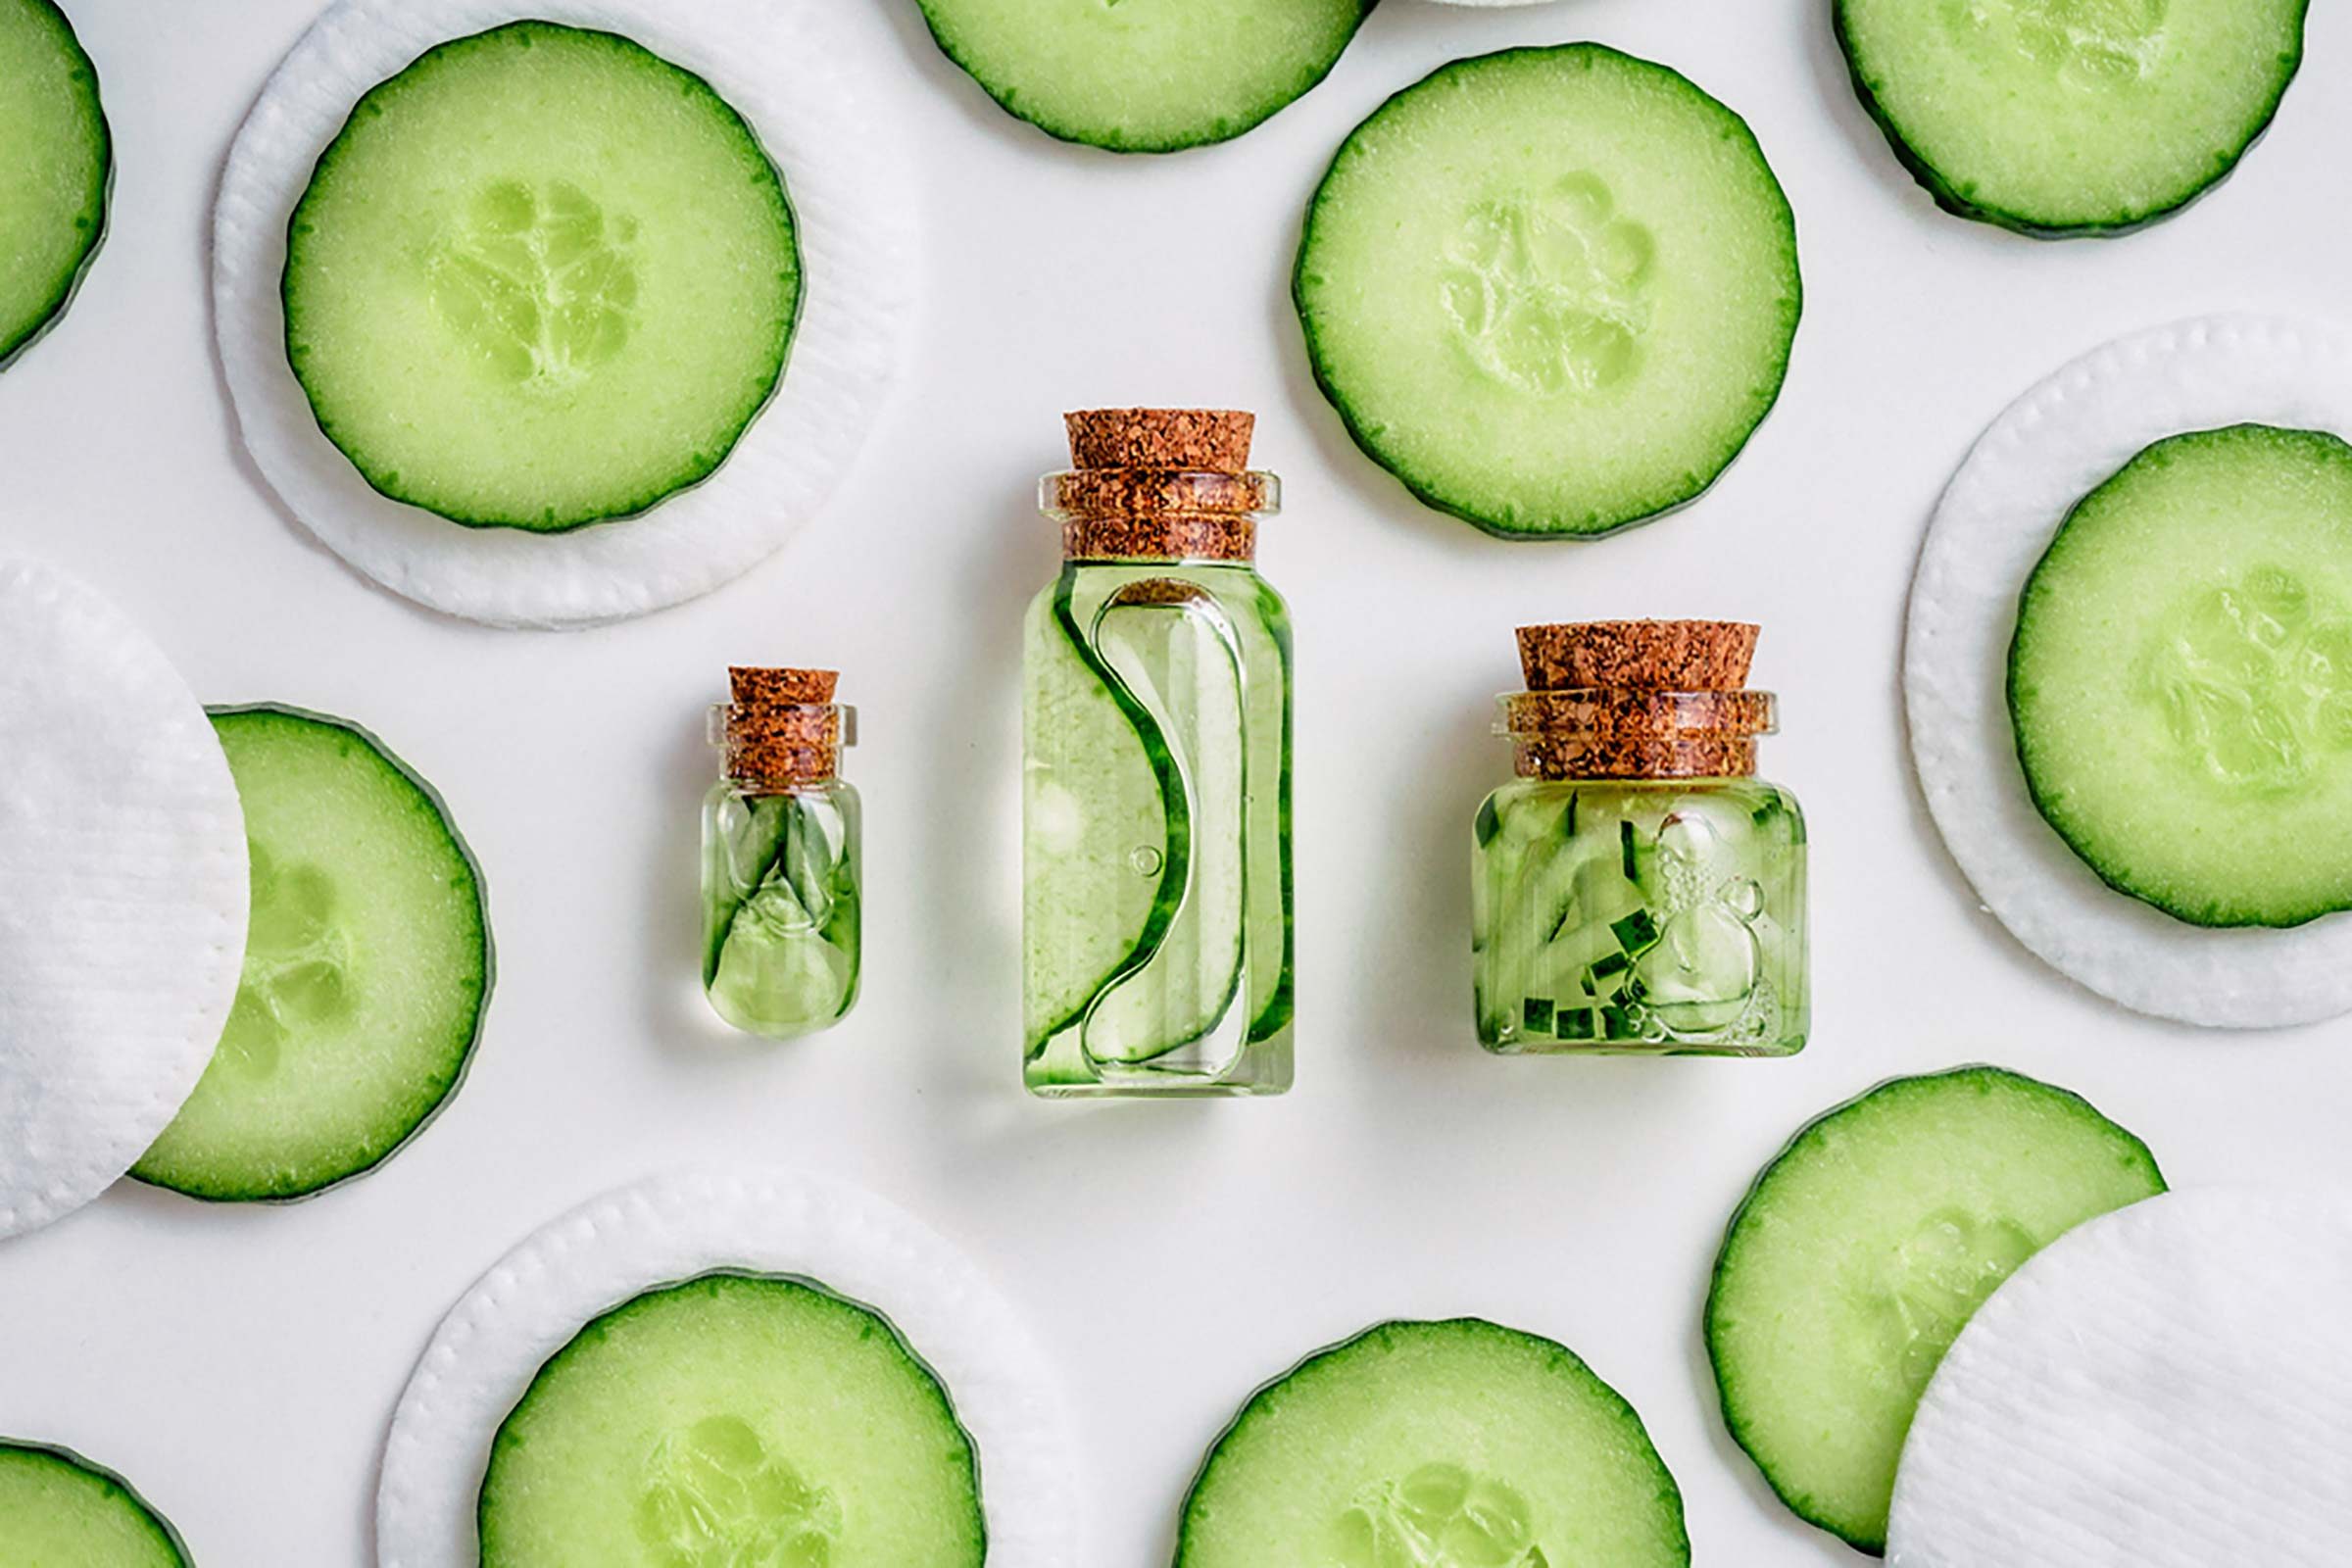 Cucumber slices artfully arranged around jars containing cucumber liquid